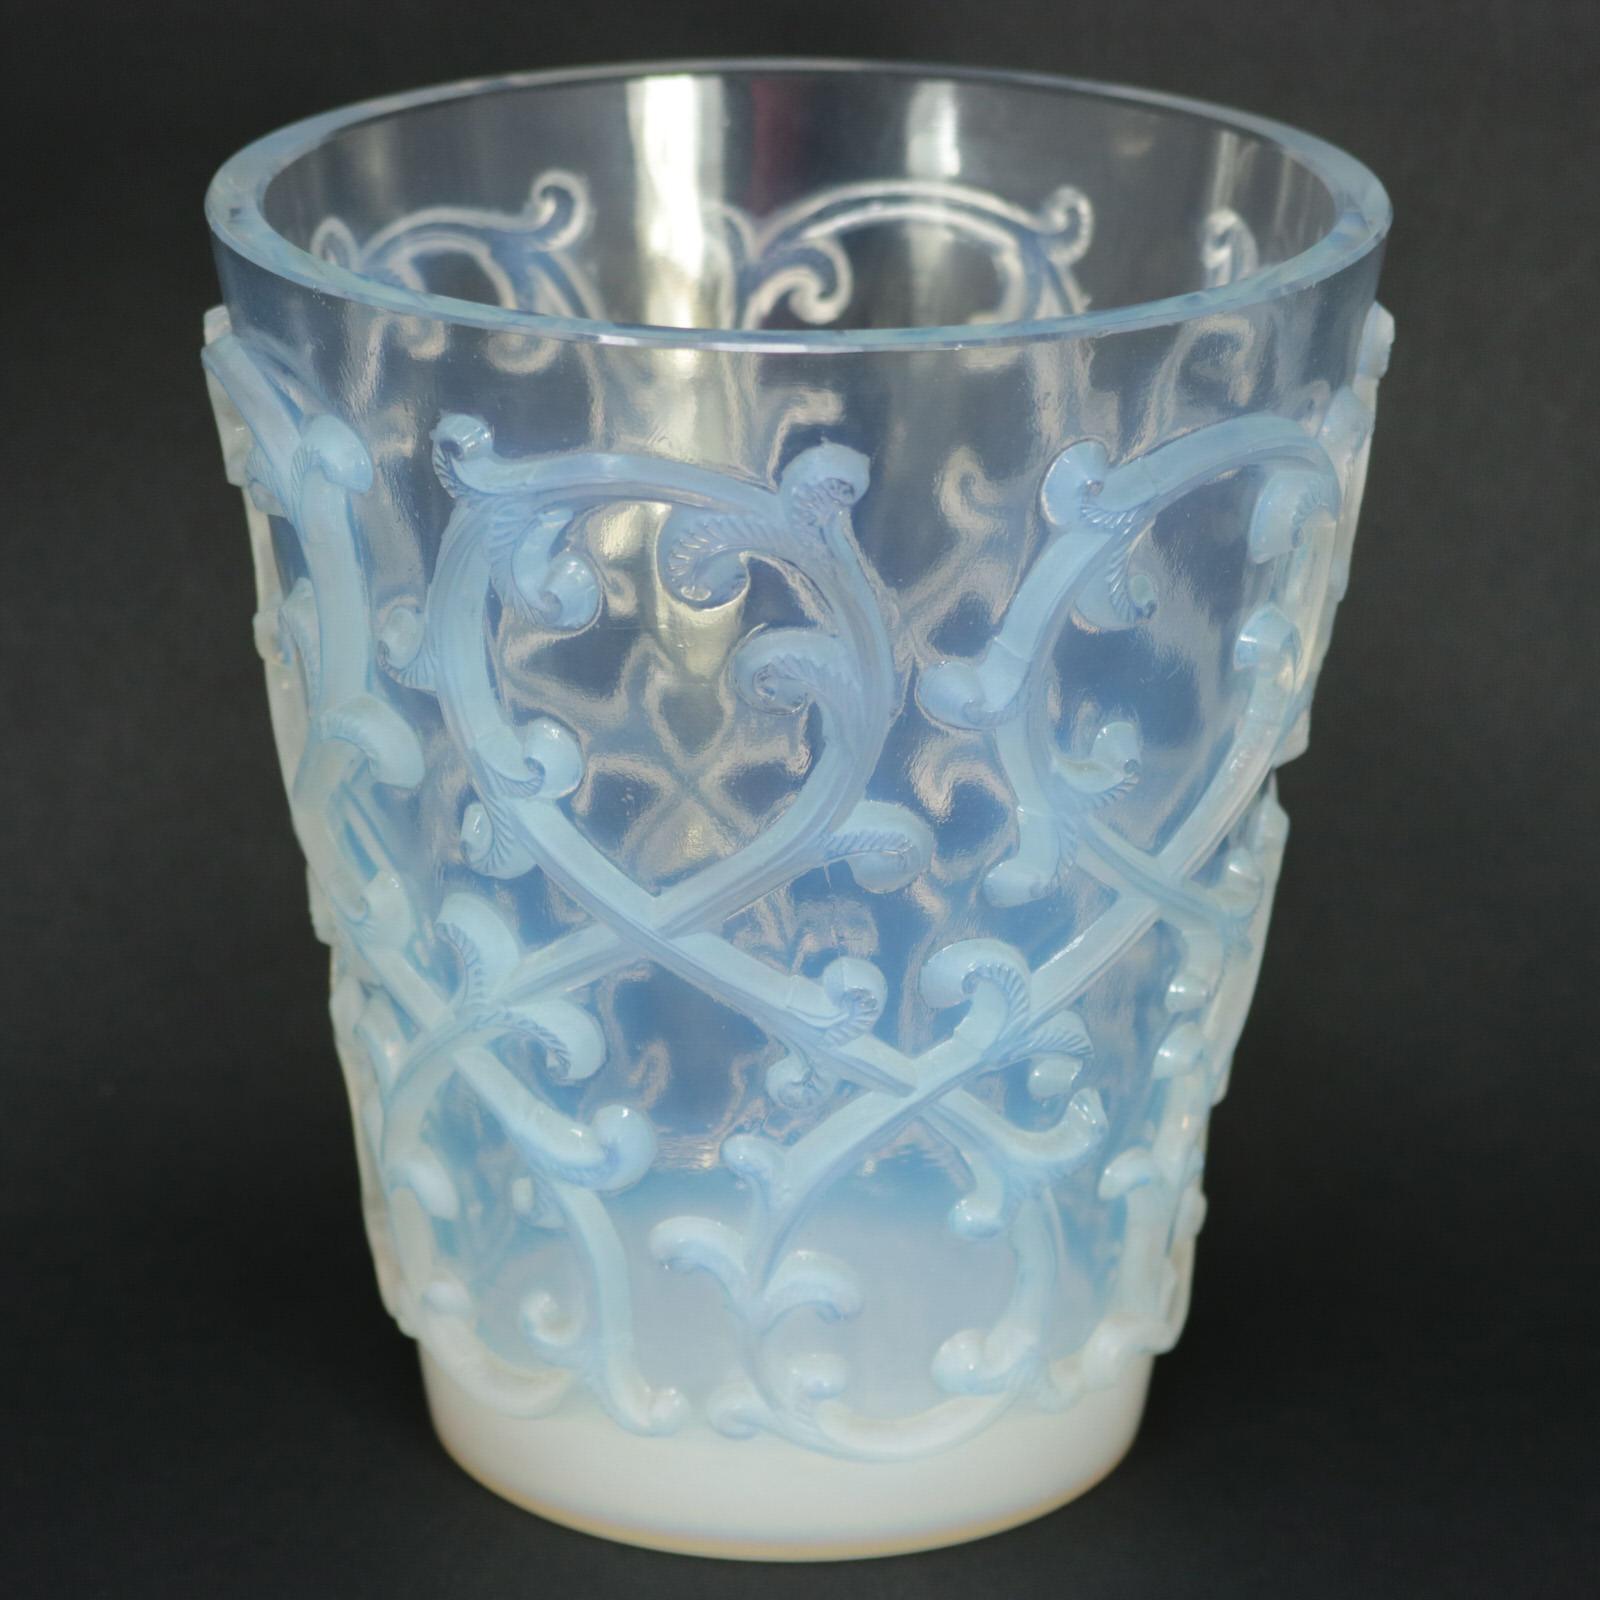 Rince-verres à vin 'Sarments' en verre opalescent de René Lalique. Ce motif présente une branche feuillue, en relief sur les côtés. Marque de fabricant inscrite au pochoir, 